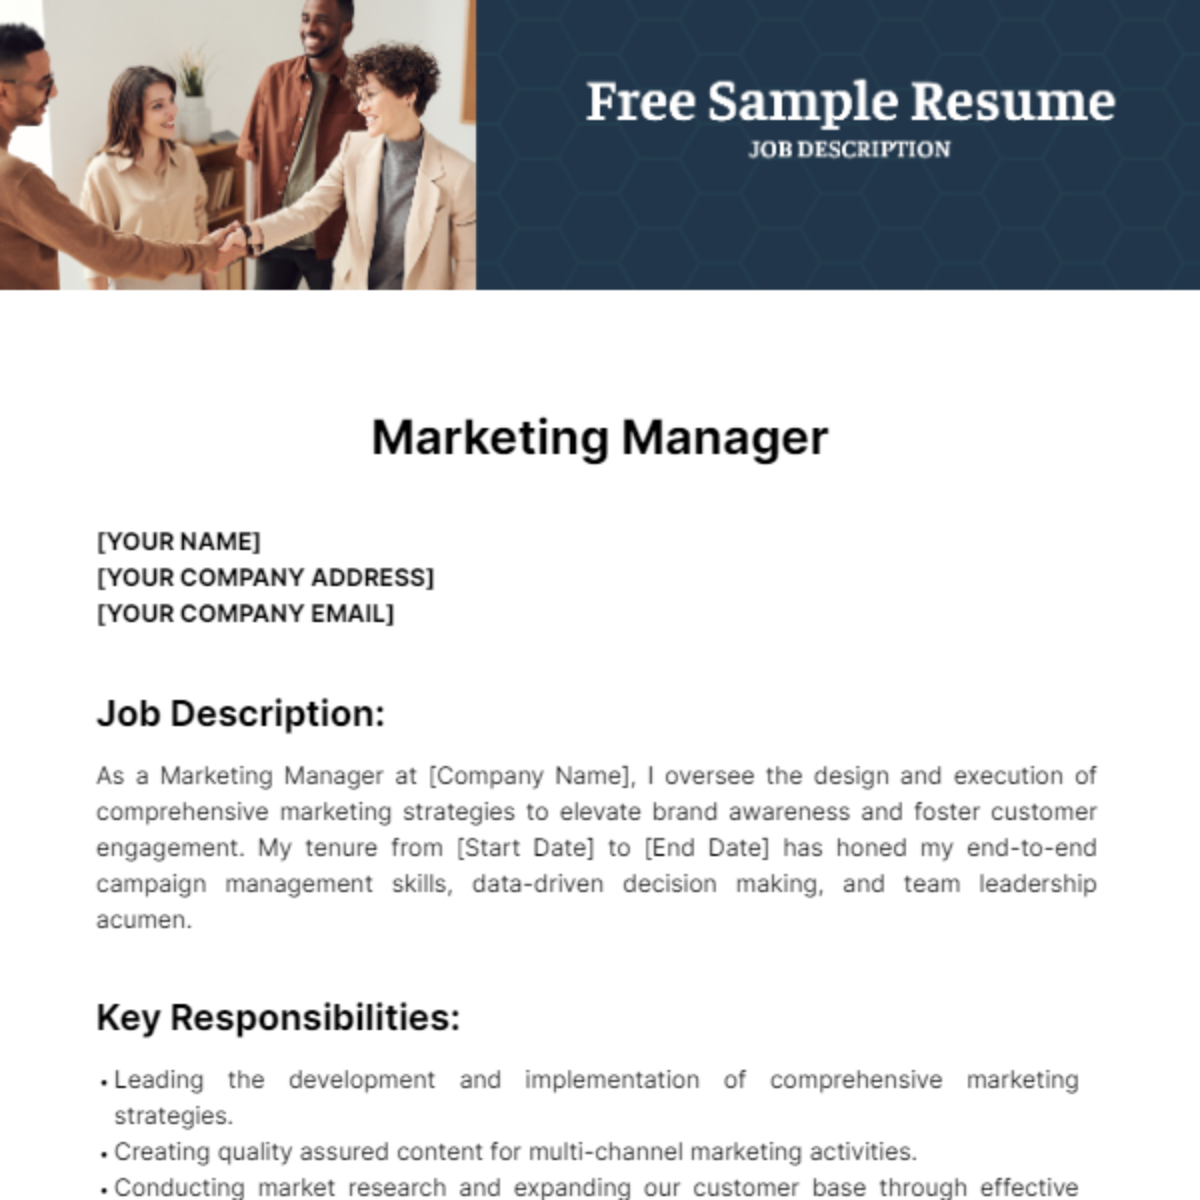 Sample Resume Job Description Template